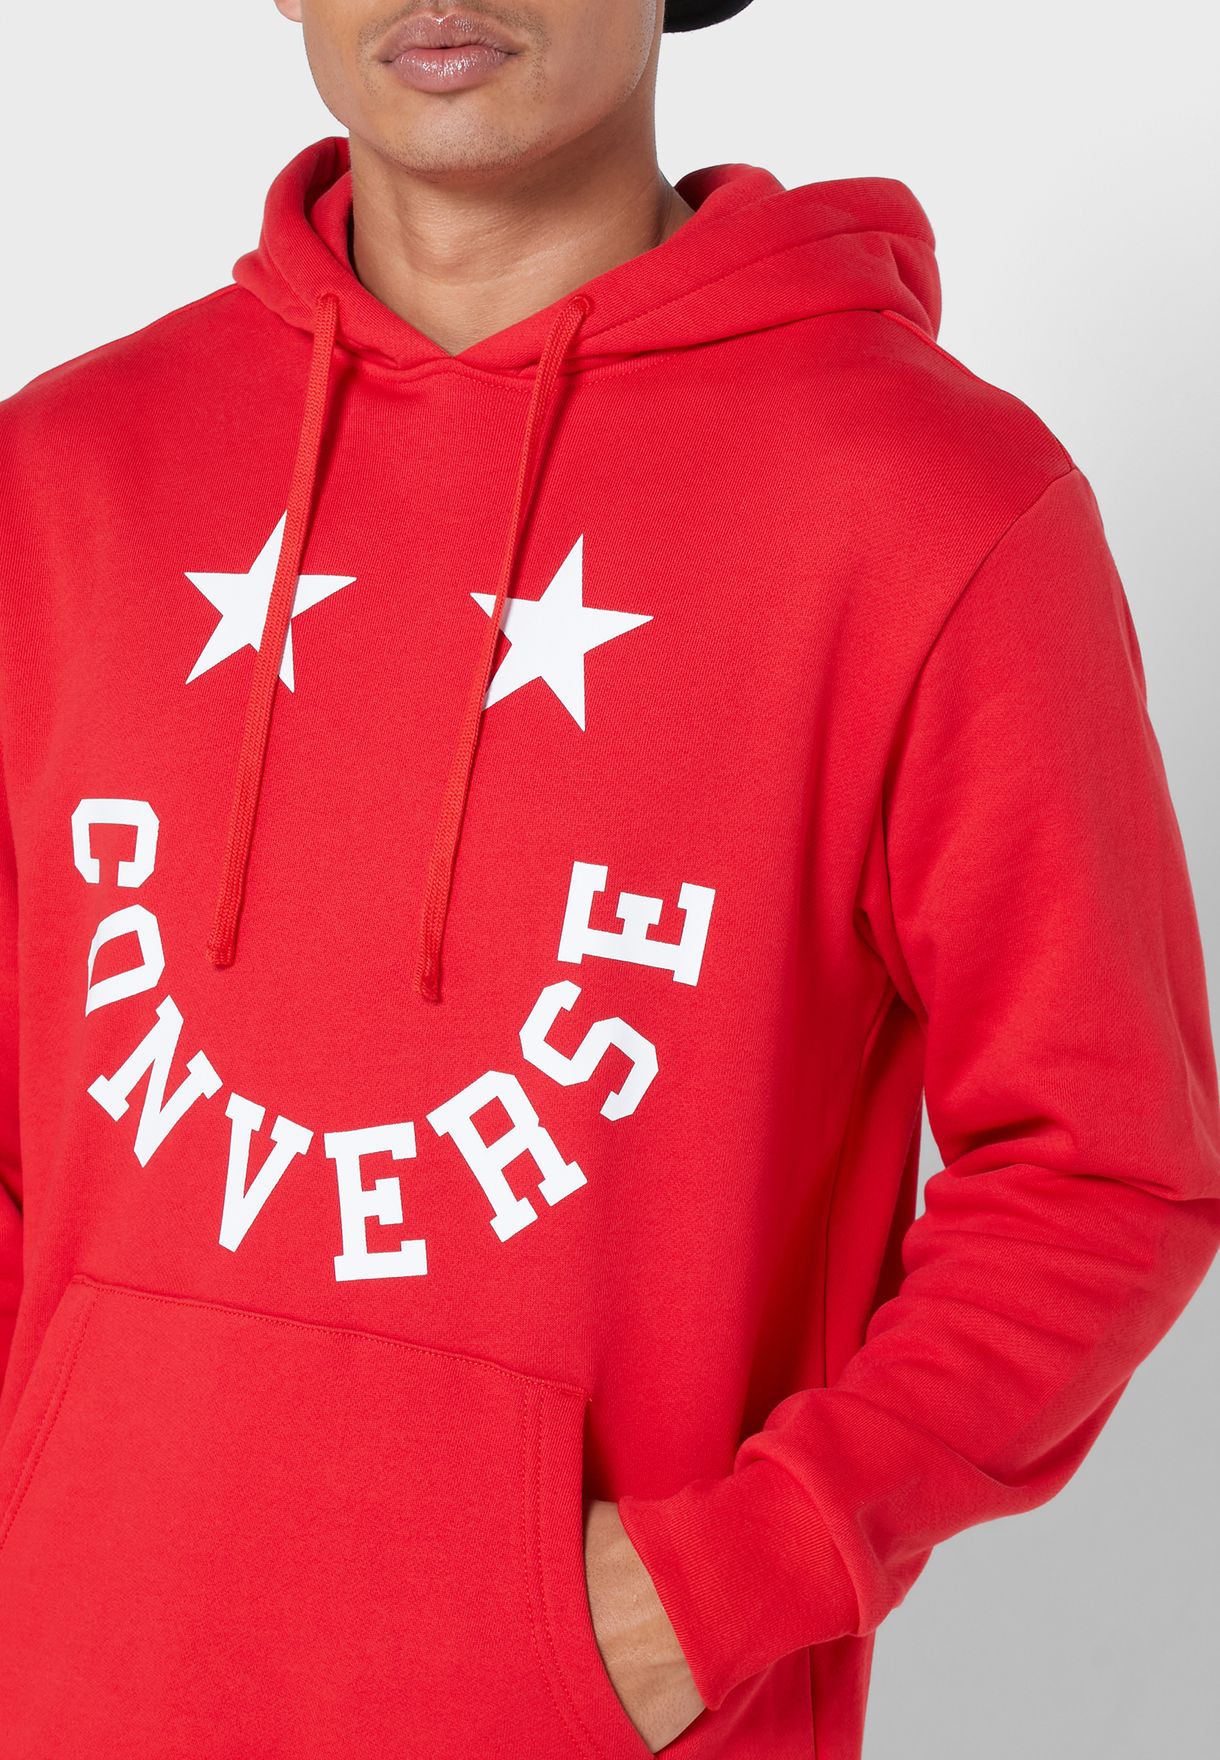 red converse hoodie